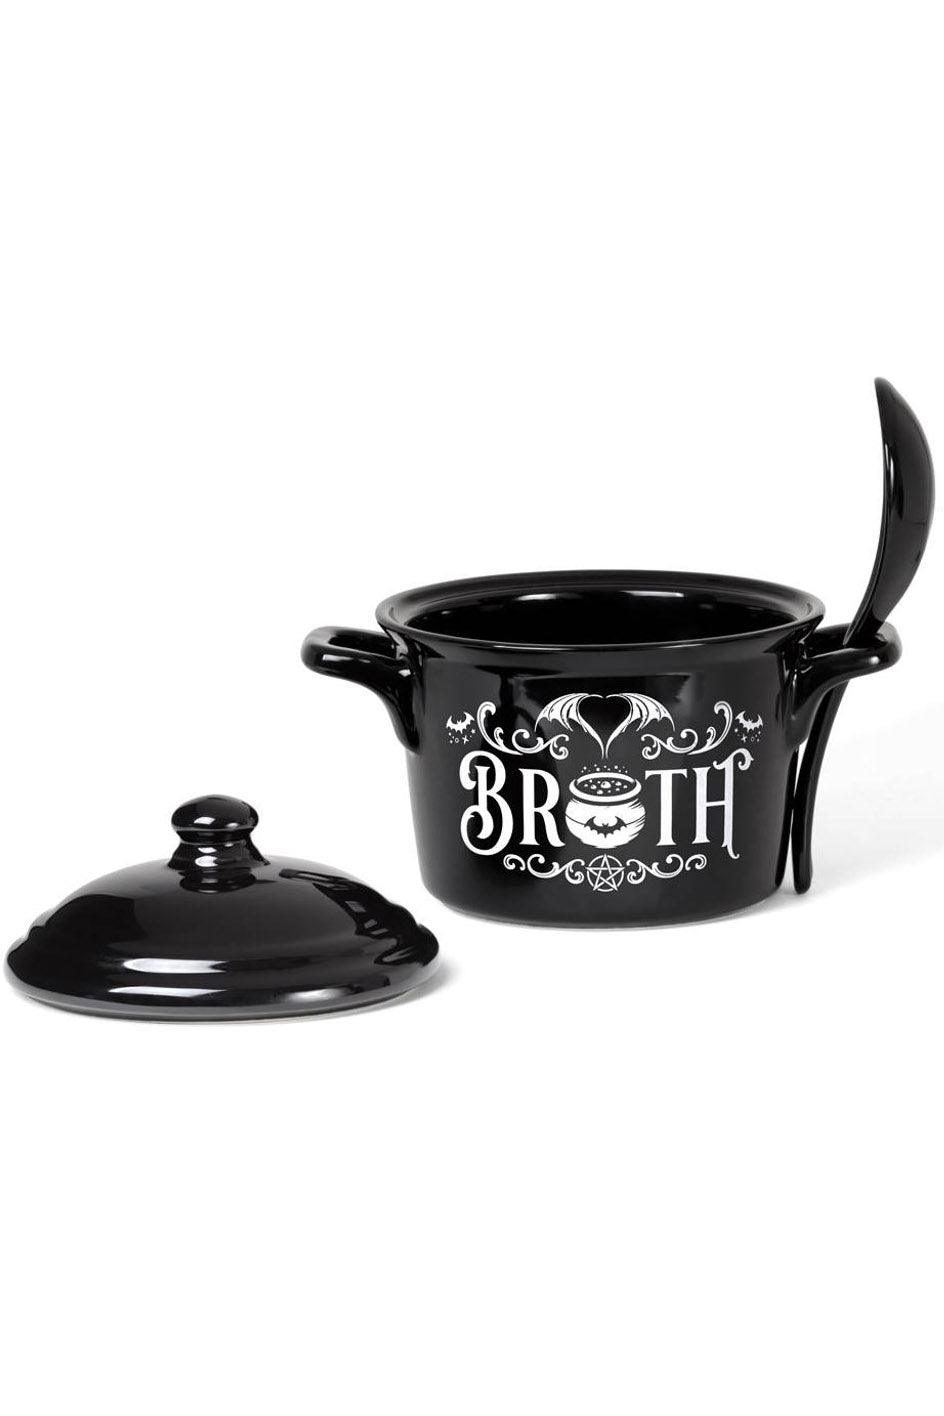 Alchemy Bat Broth Bowl & Spoon Set - VampireFreaks